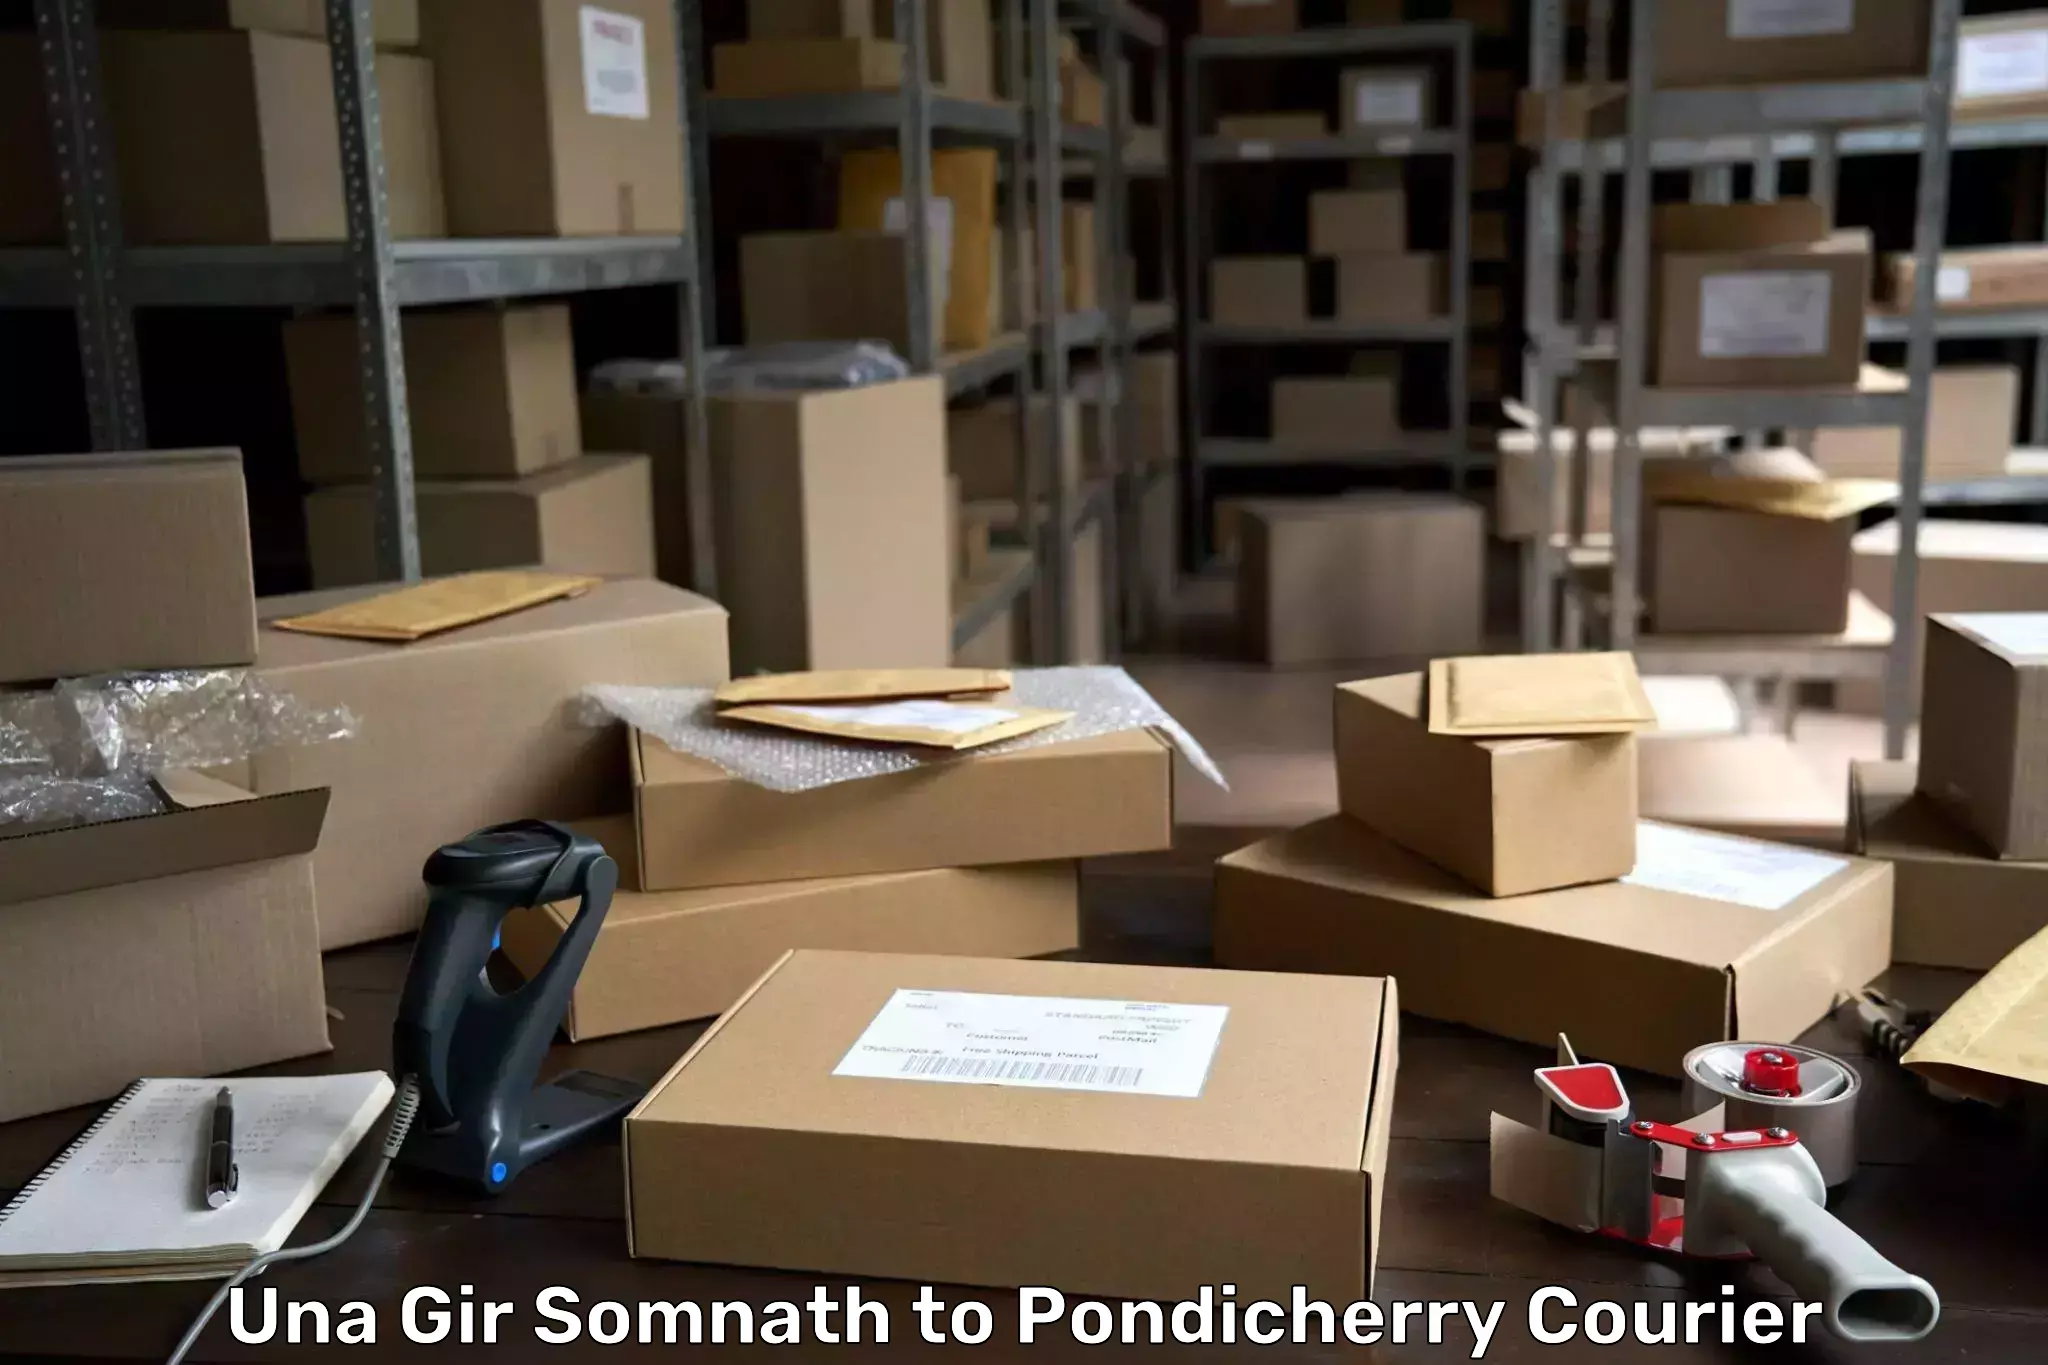 Cargo courier service Una Gir Somnath to Pondicherry University